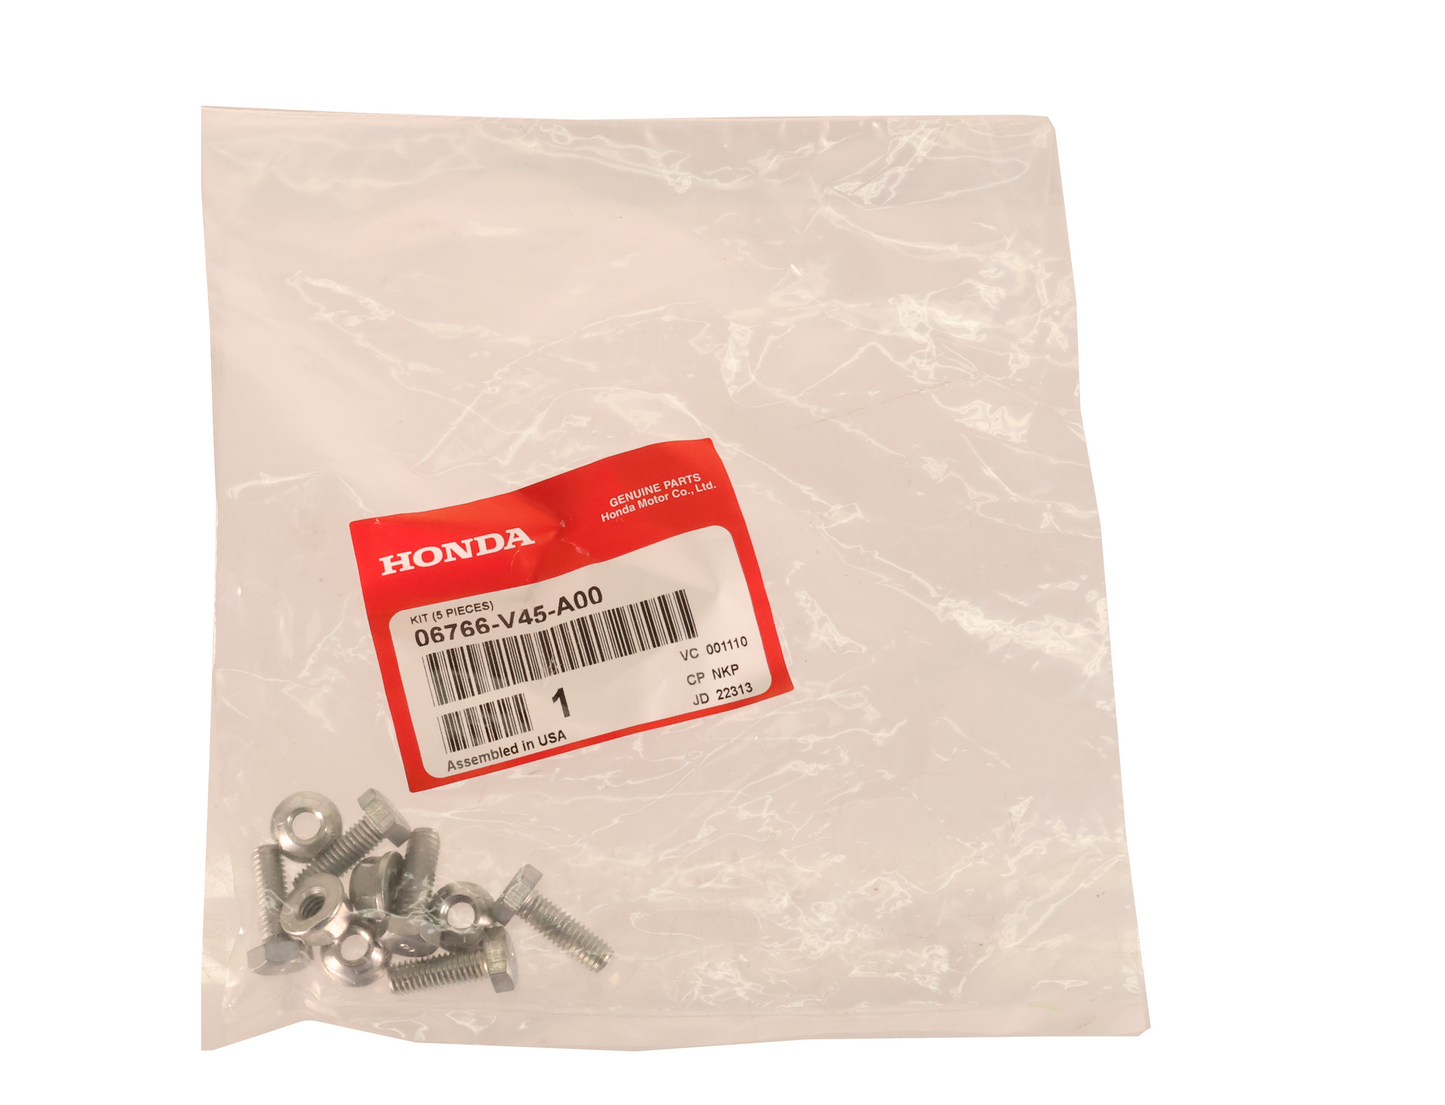 Honda Original Equipment Shear Bolt Kit (5 Pieces) - 06766-V45-A00